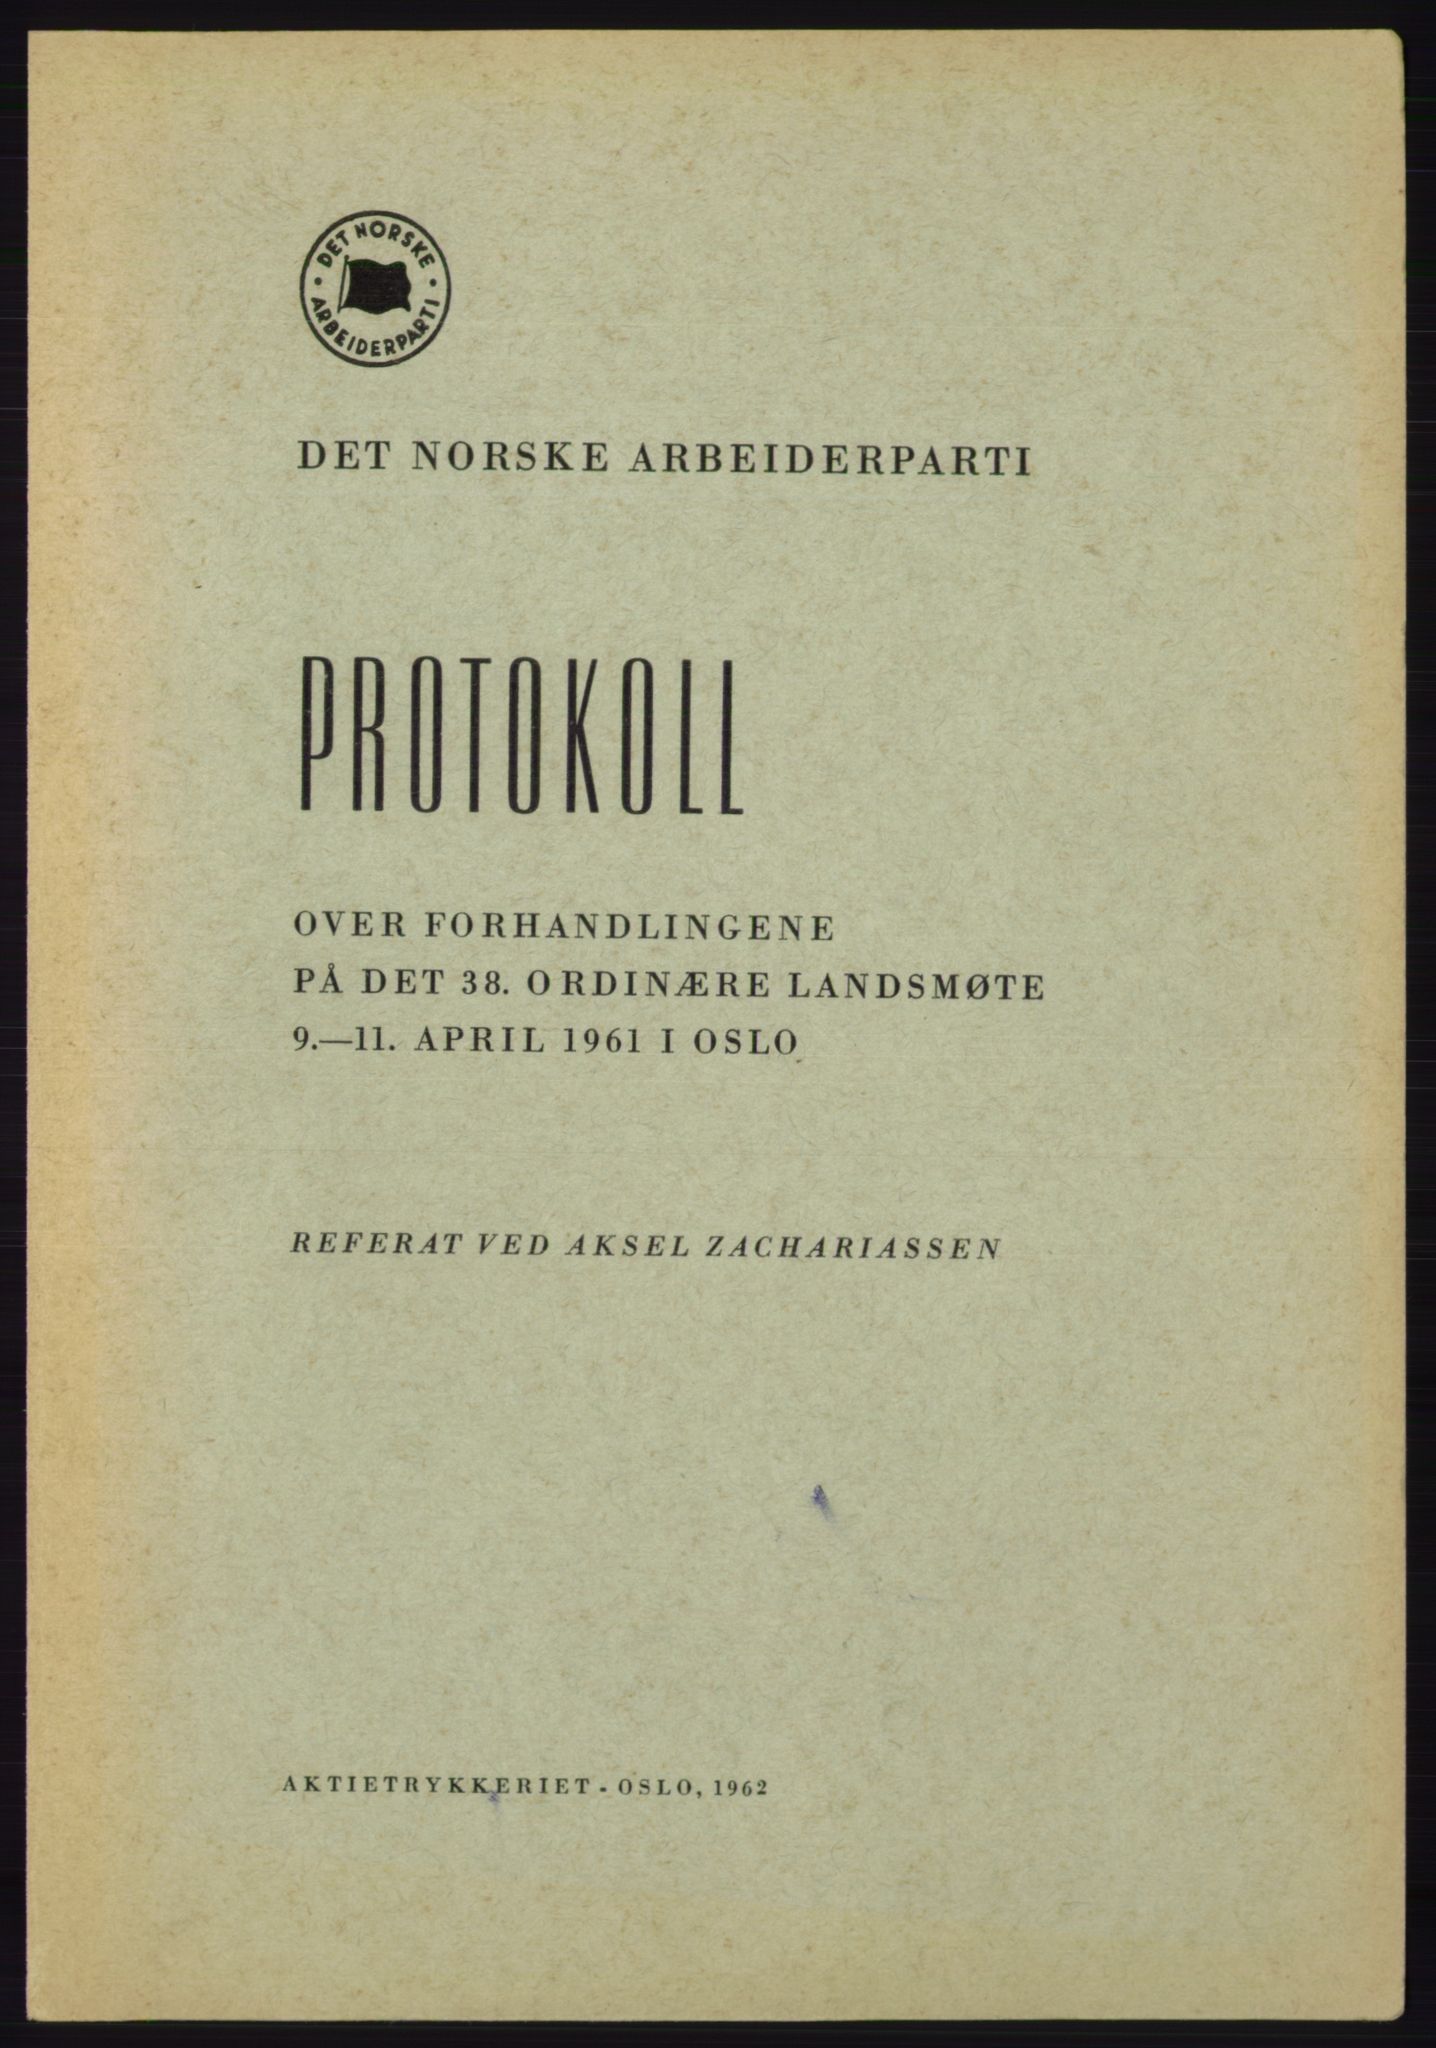 Det norske Arbeiderparti - publikasjoner, AAB/-/-/-: Protokoll over forhandlingene på det 38. ordinære landsmøte 9.-11. april 1961 i Oslo, 1961